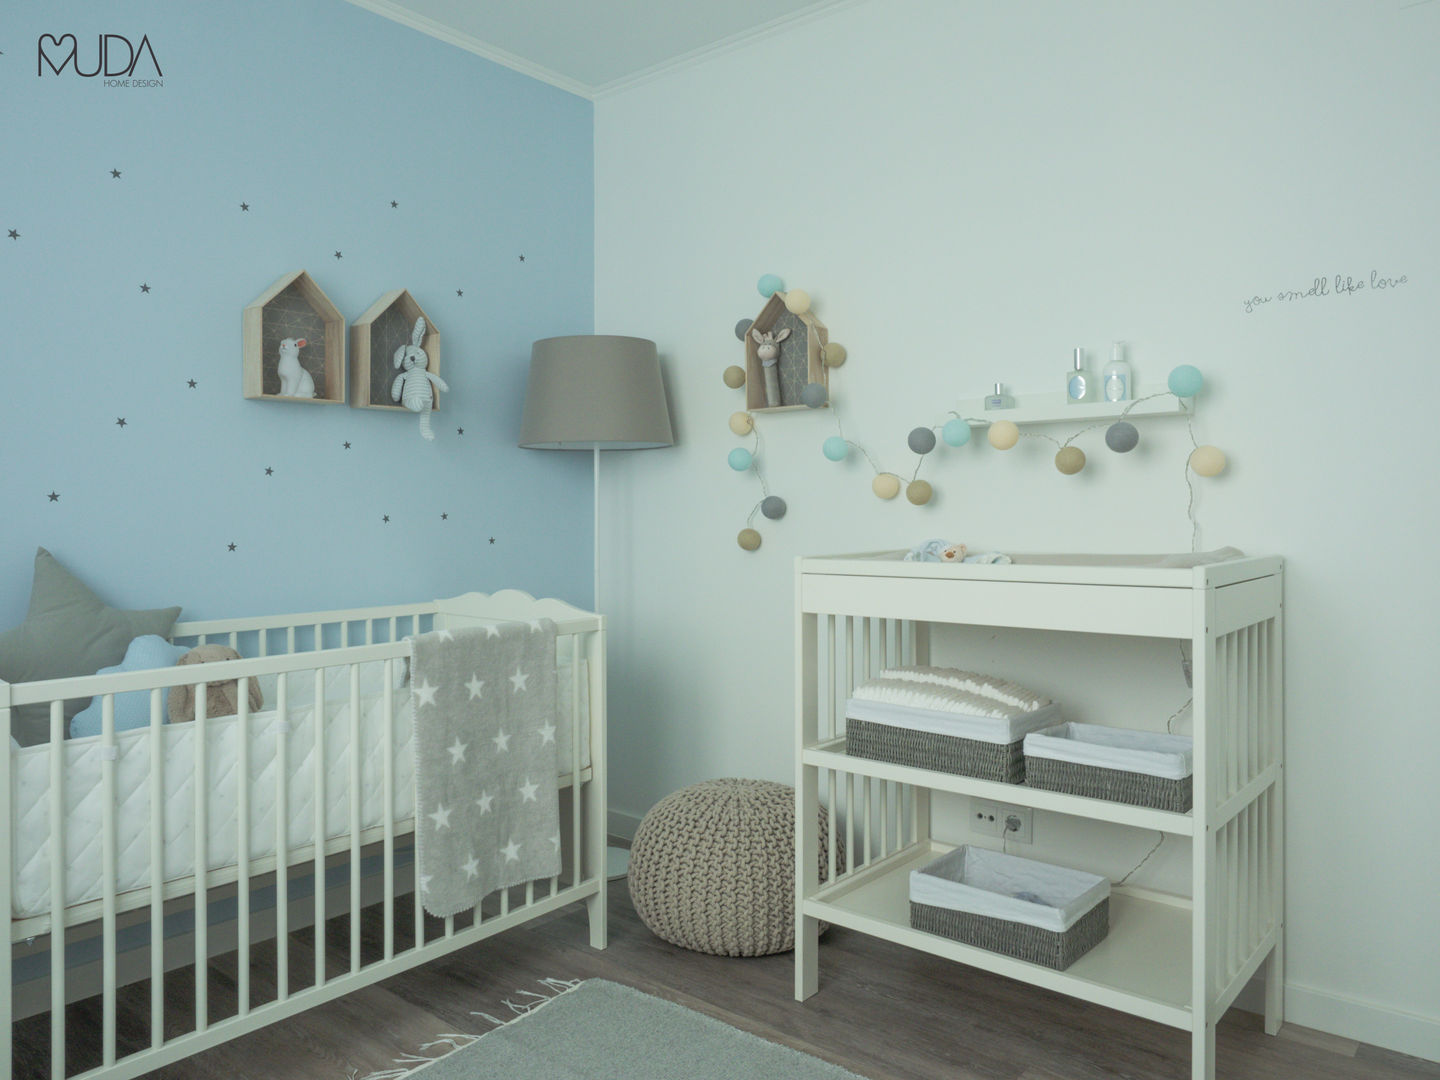 Baby Pedro's Room - Palmela, MUDA Home Design MUDA Home Design Детская комнатa в скандинавском стиле